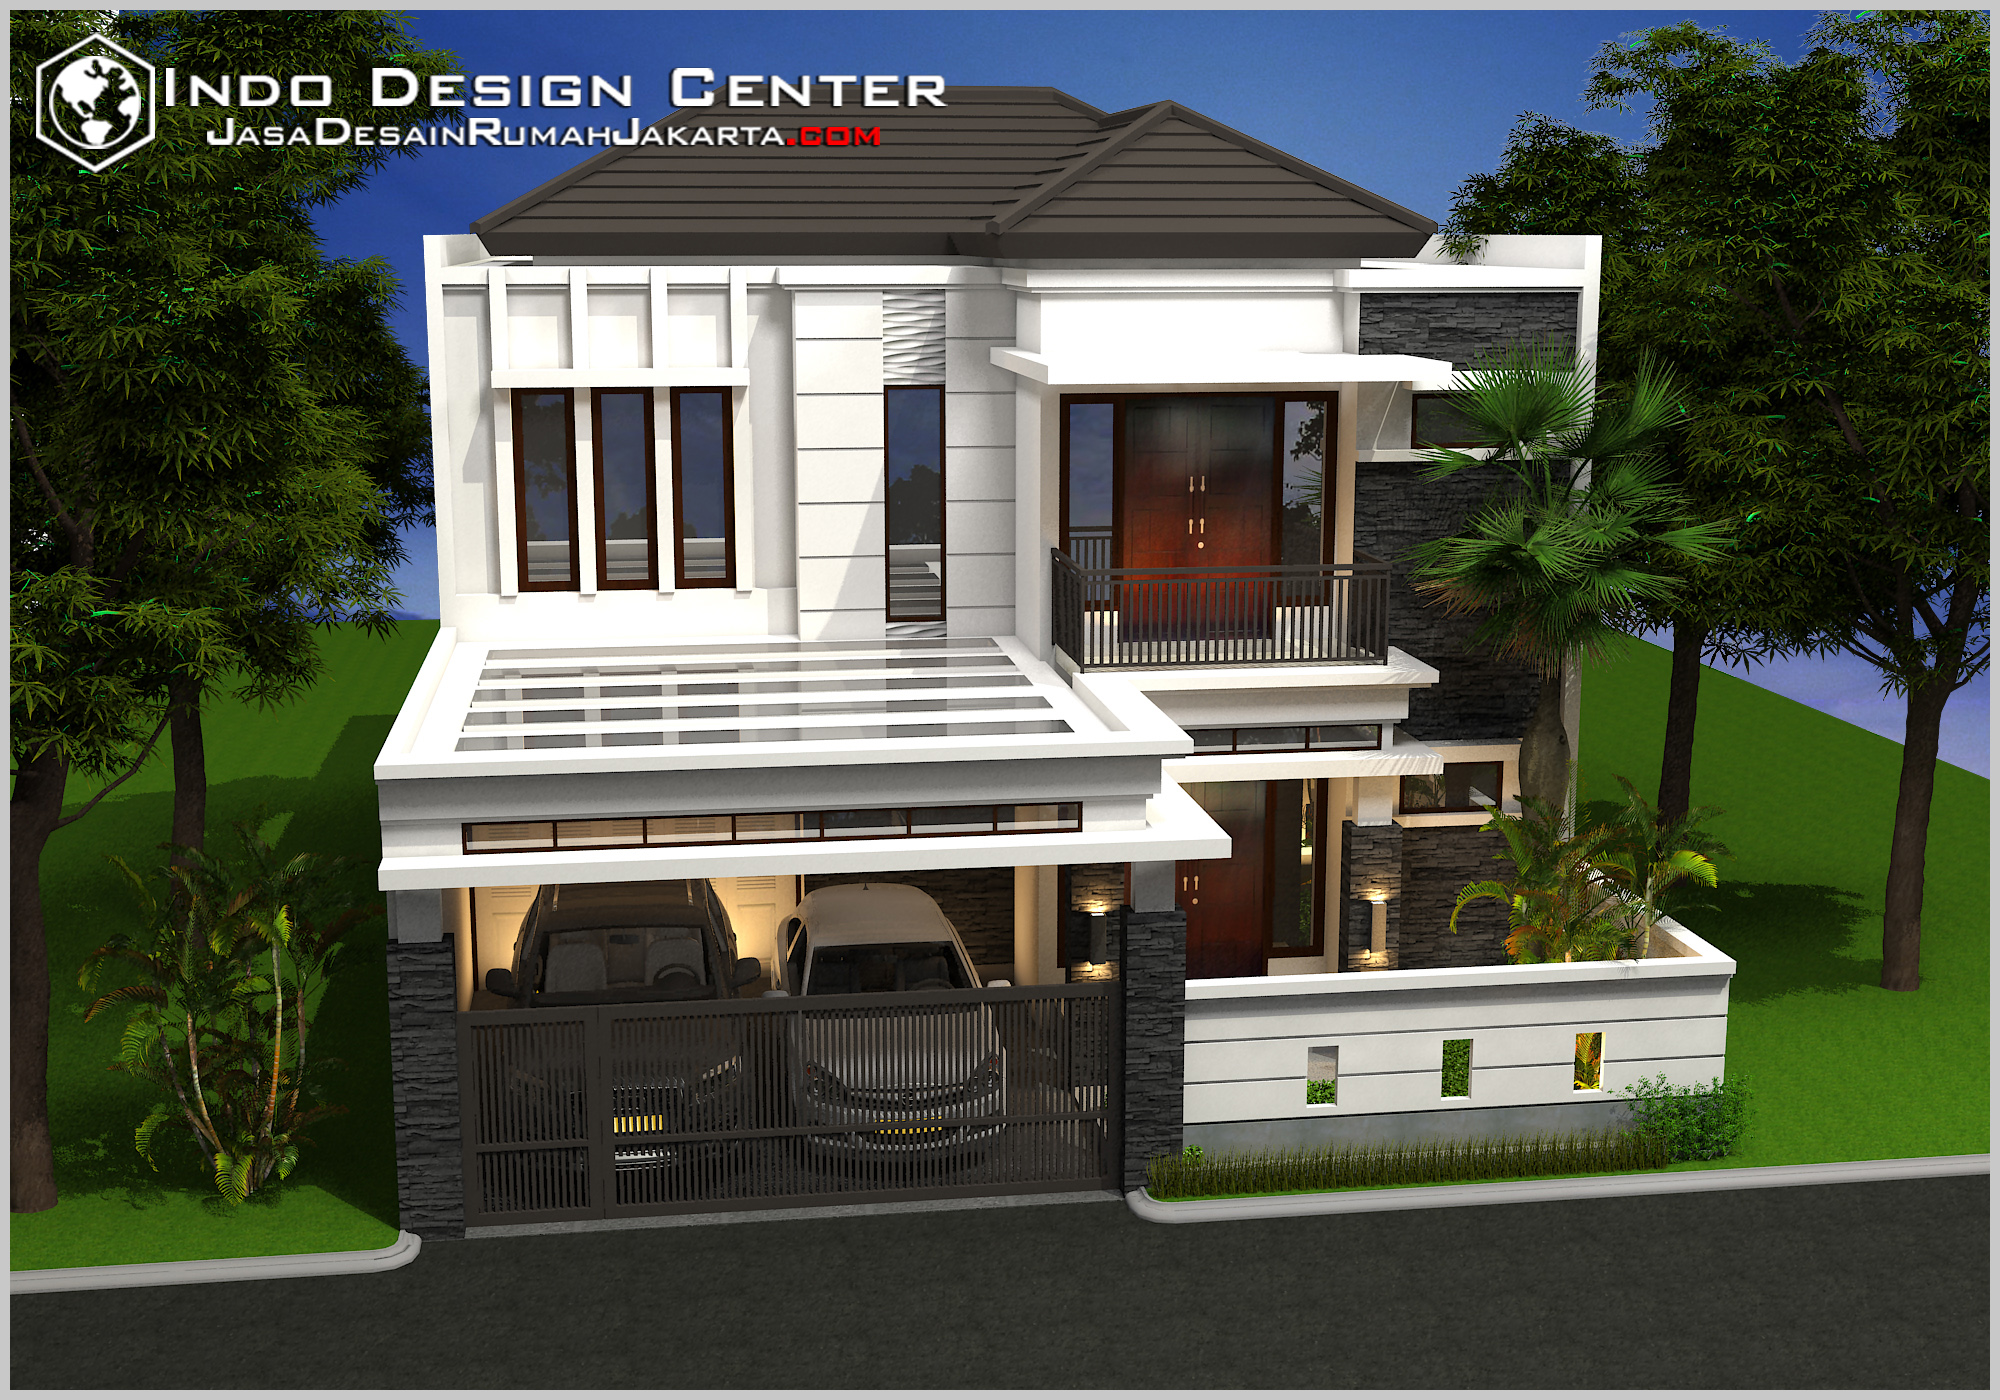 Gambar Desain Rumah Terbaru, Jasa Desain Rumah Jakarta 